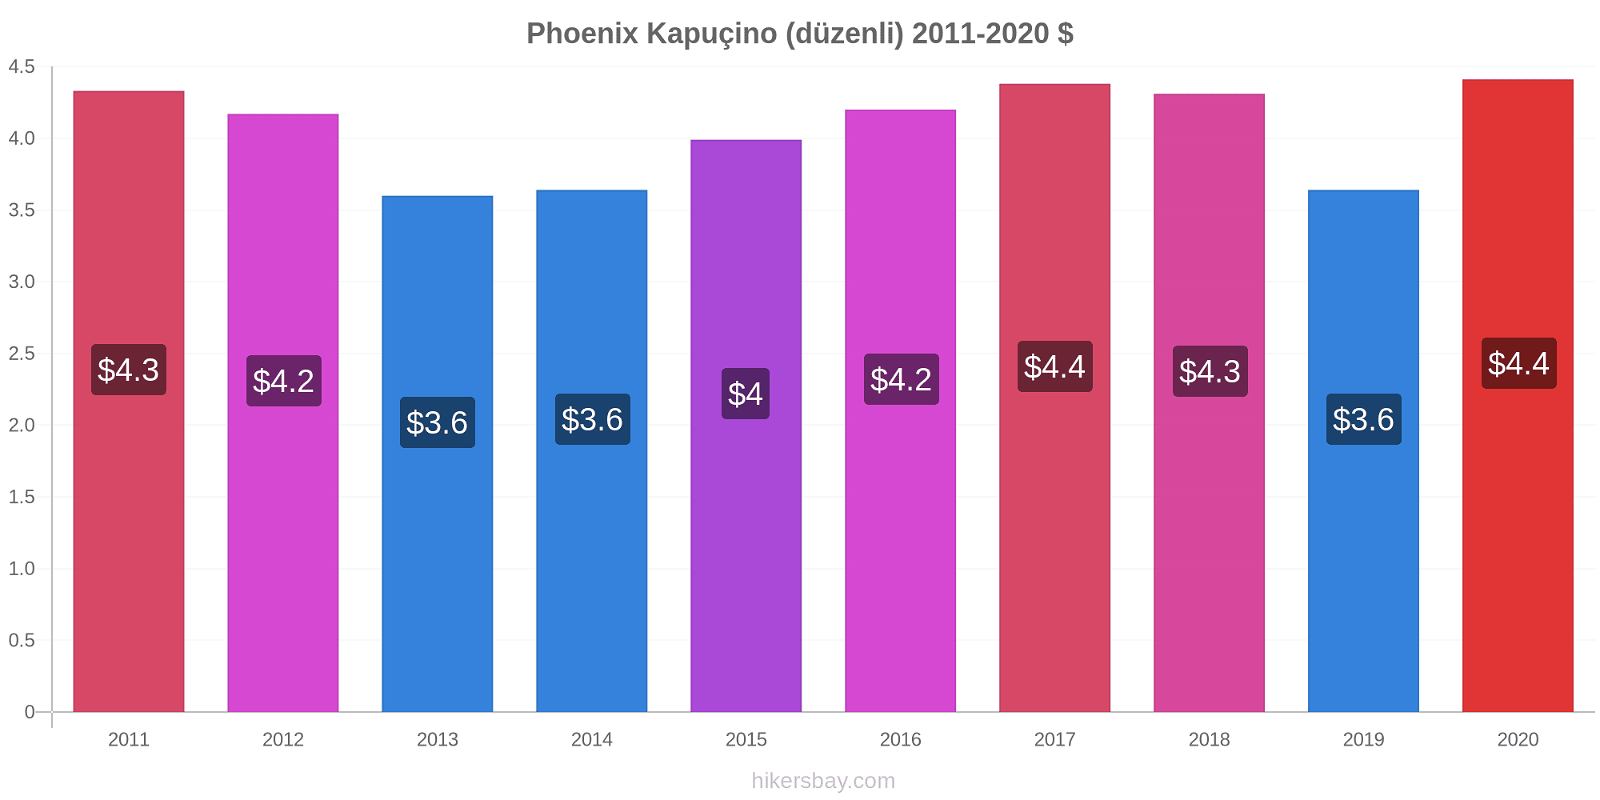 Phoenix fiyat değişiklikleri Kapuçino (düzenli) hikersbay.com